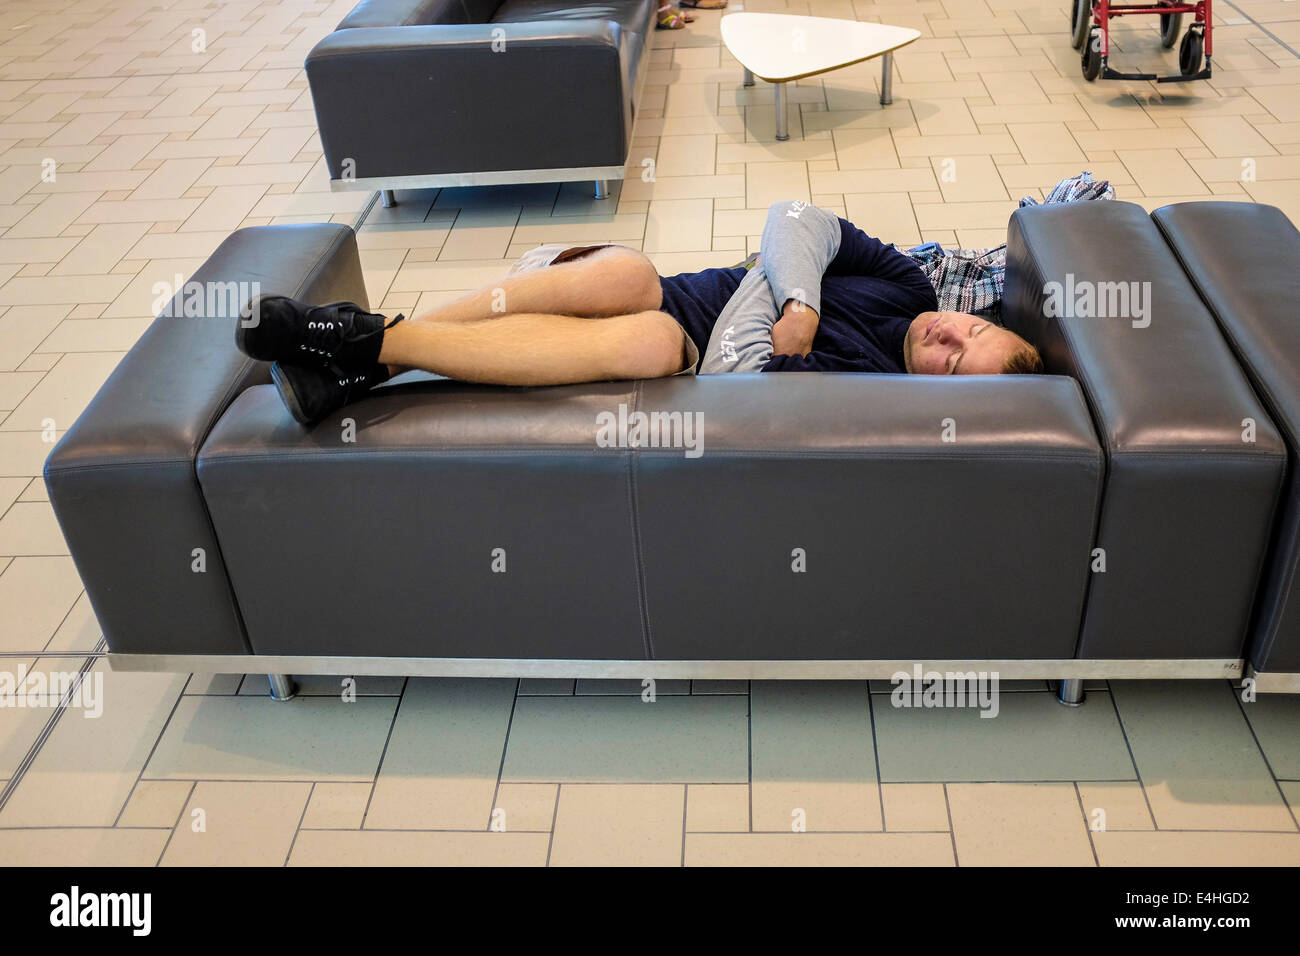 Ein Reisender holt etwas Schlaf während des Wartens auf Flug Brisbane International Airport Stockfoto